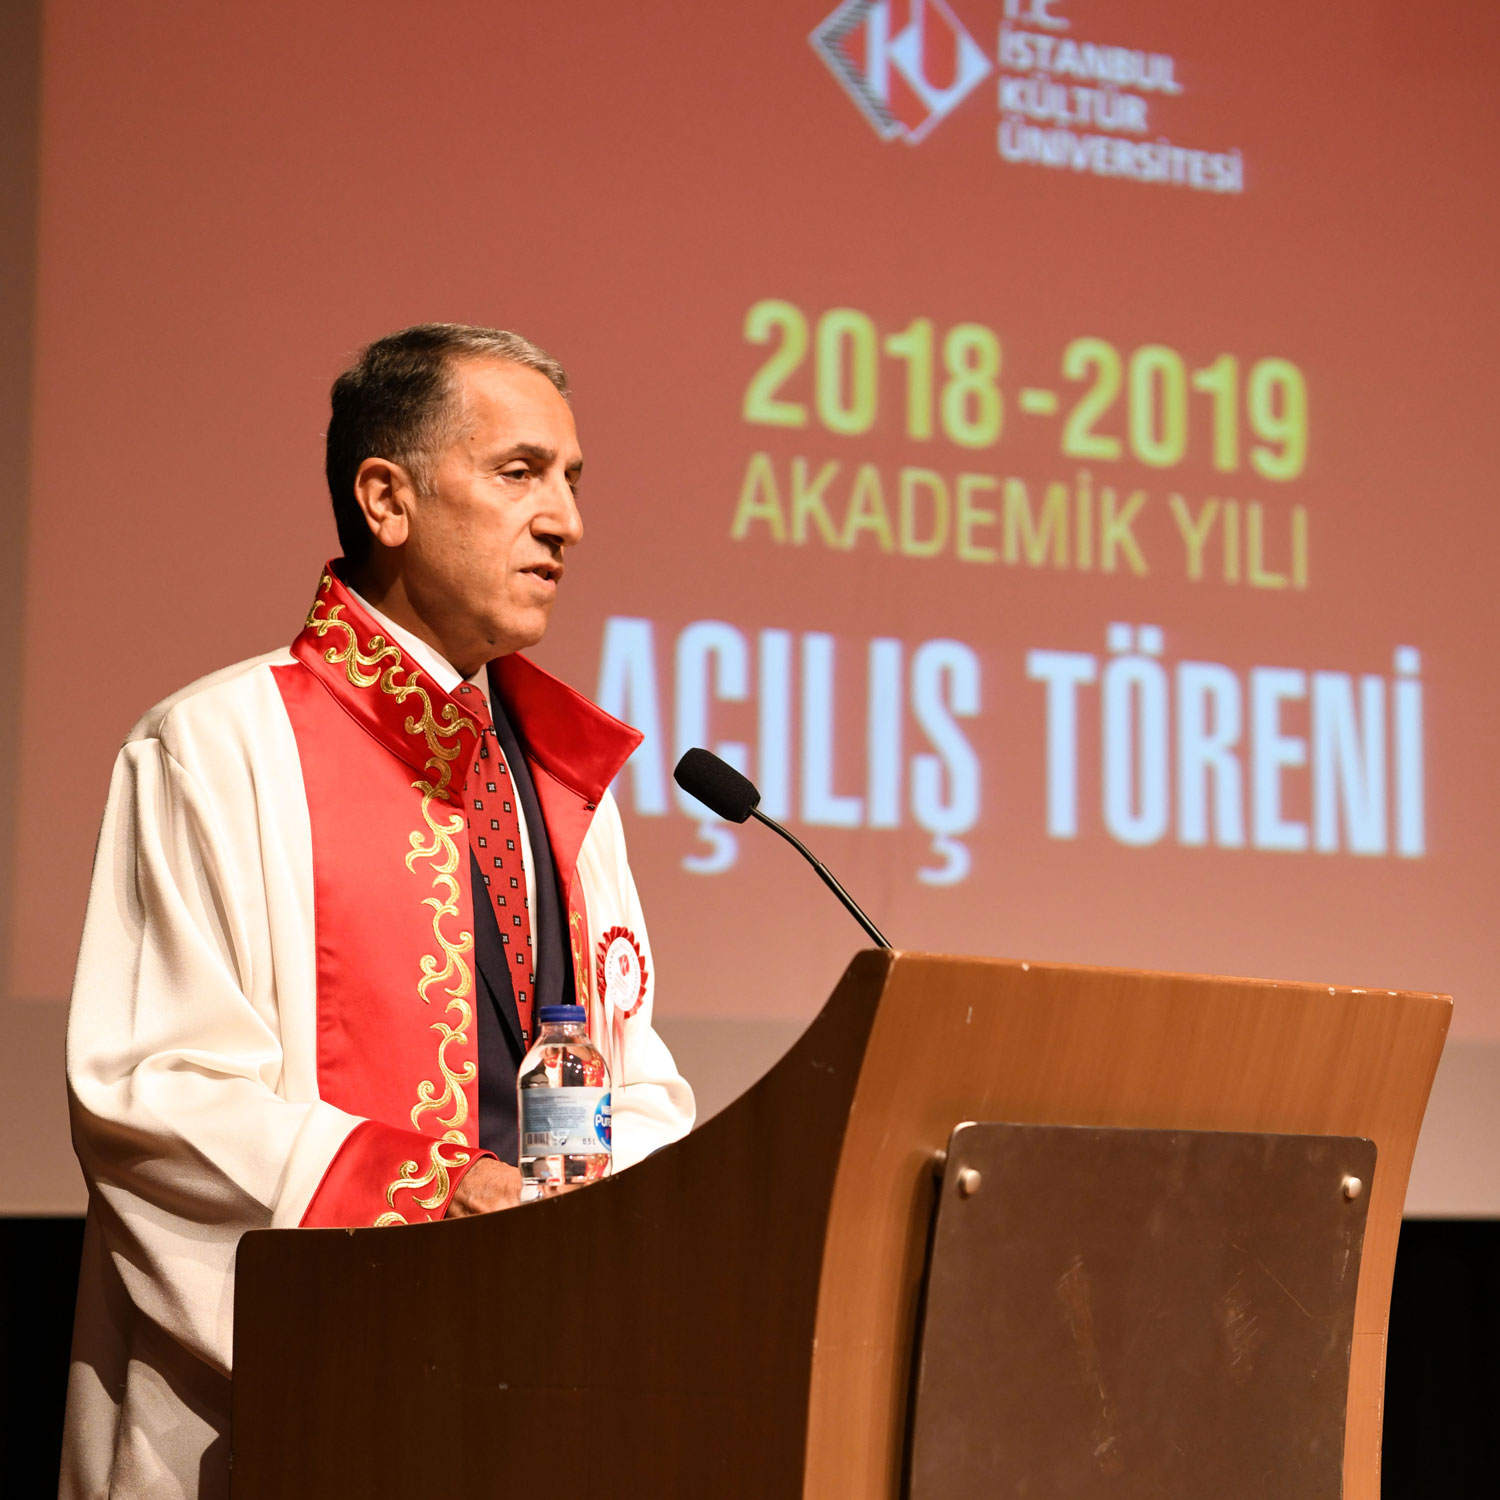 İstanbul Kültür Üniversitesi 2018-2019 Akademik Yılı Açılış Töreni